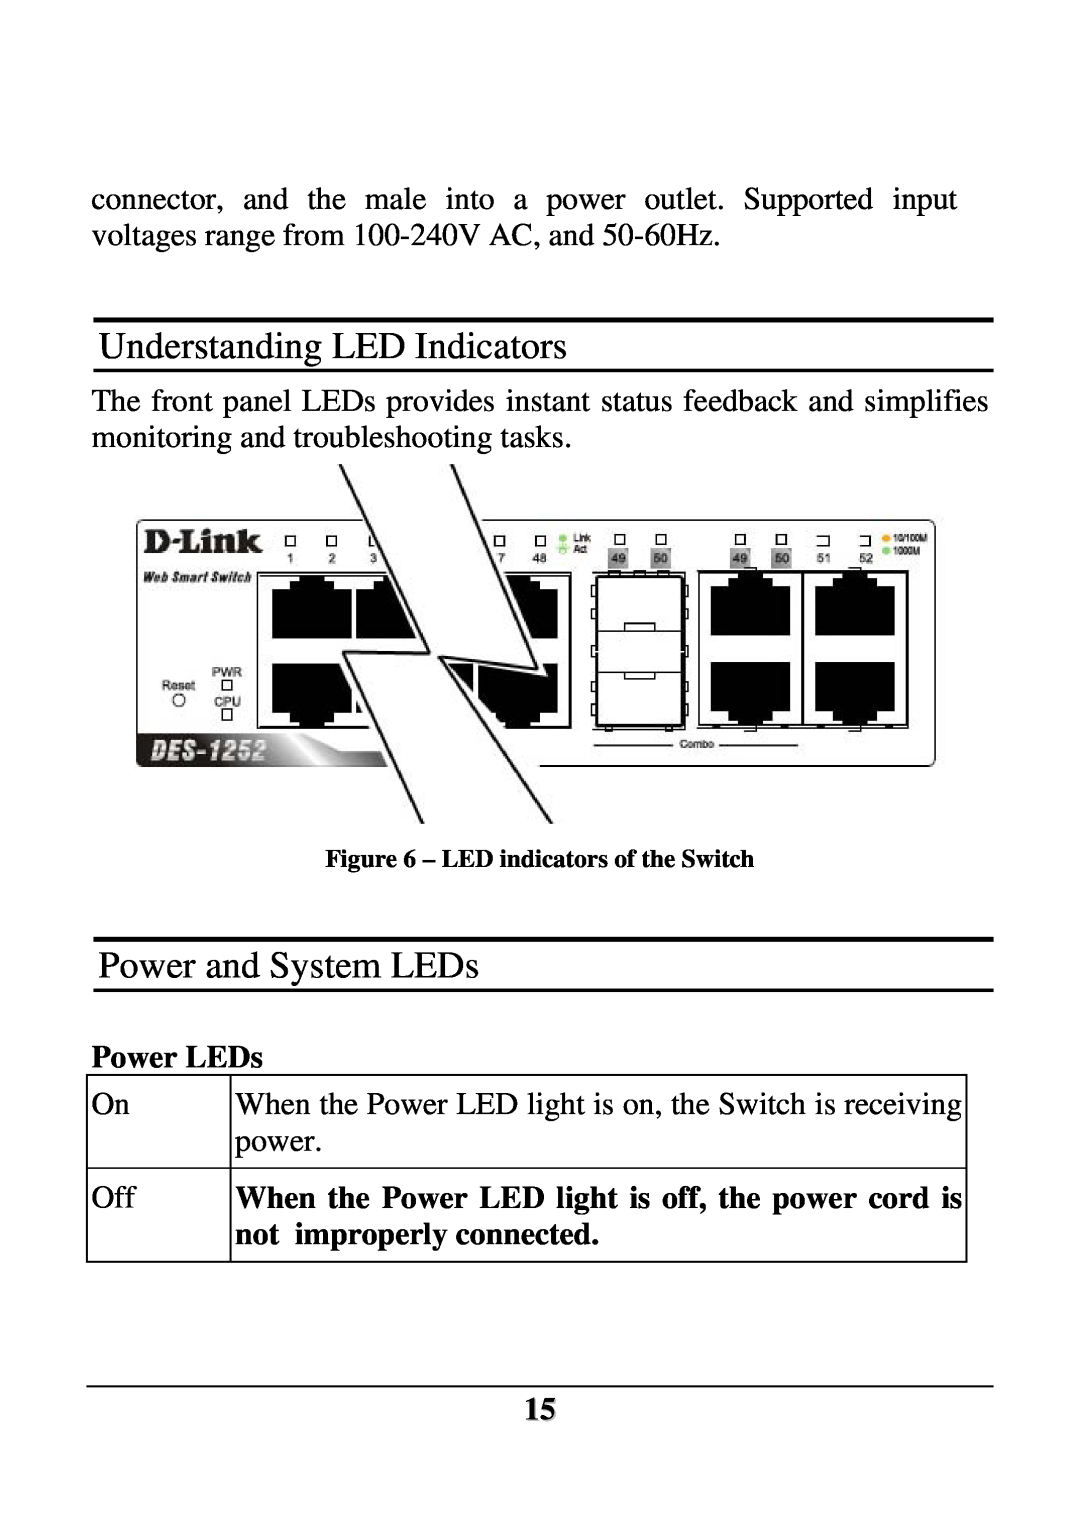 D-Link DES-1252 user manual Understanding LED Indicators, Power and System LEDs, Power LEDs 